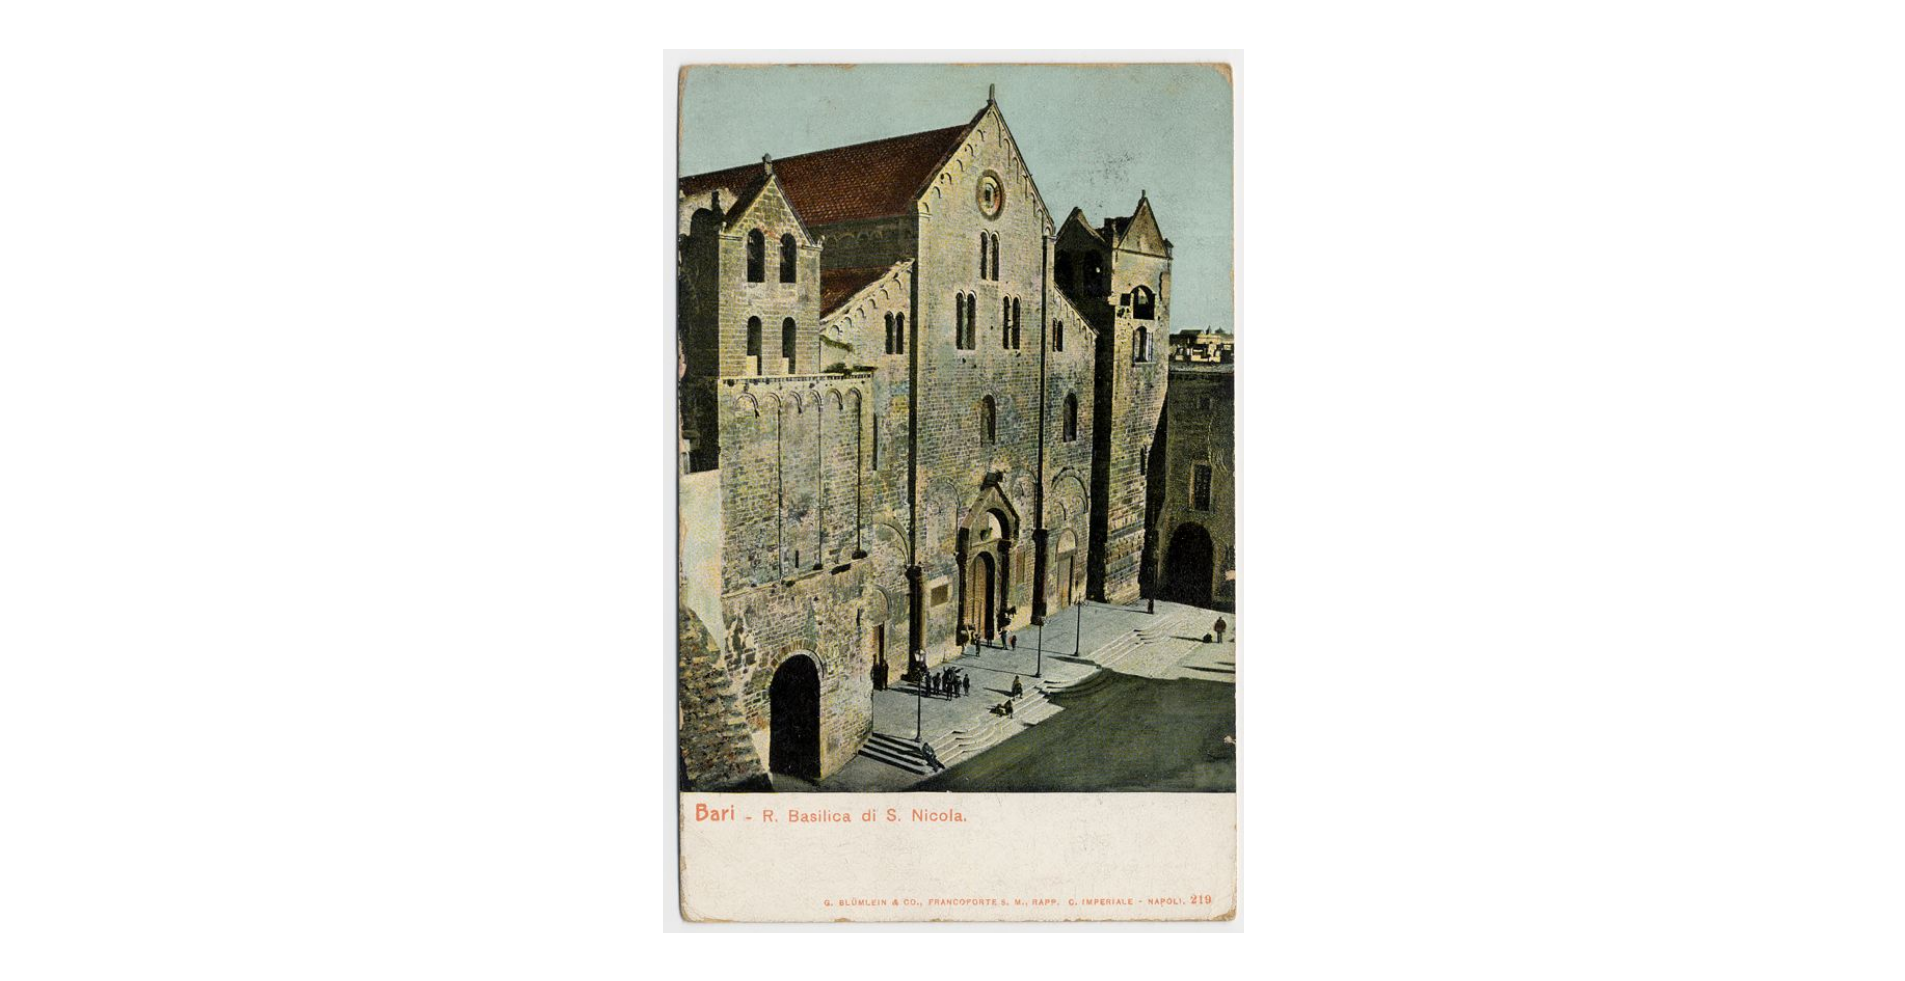 Fotografo non identificato, Bari - Basilica di S. Nicola di Bari, 1904, cartolina, FFC013996